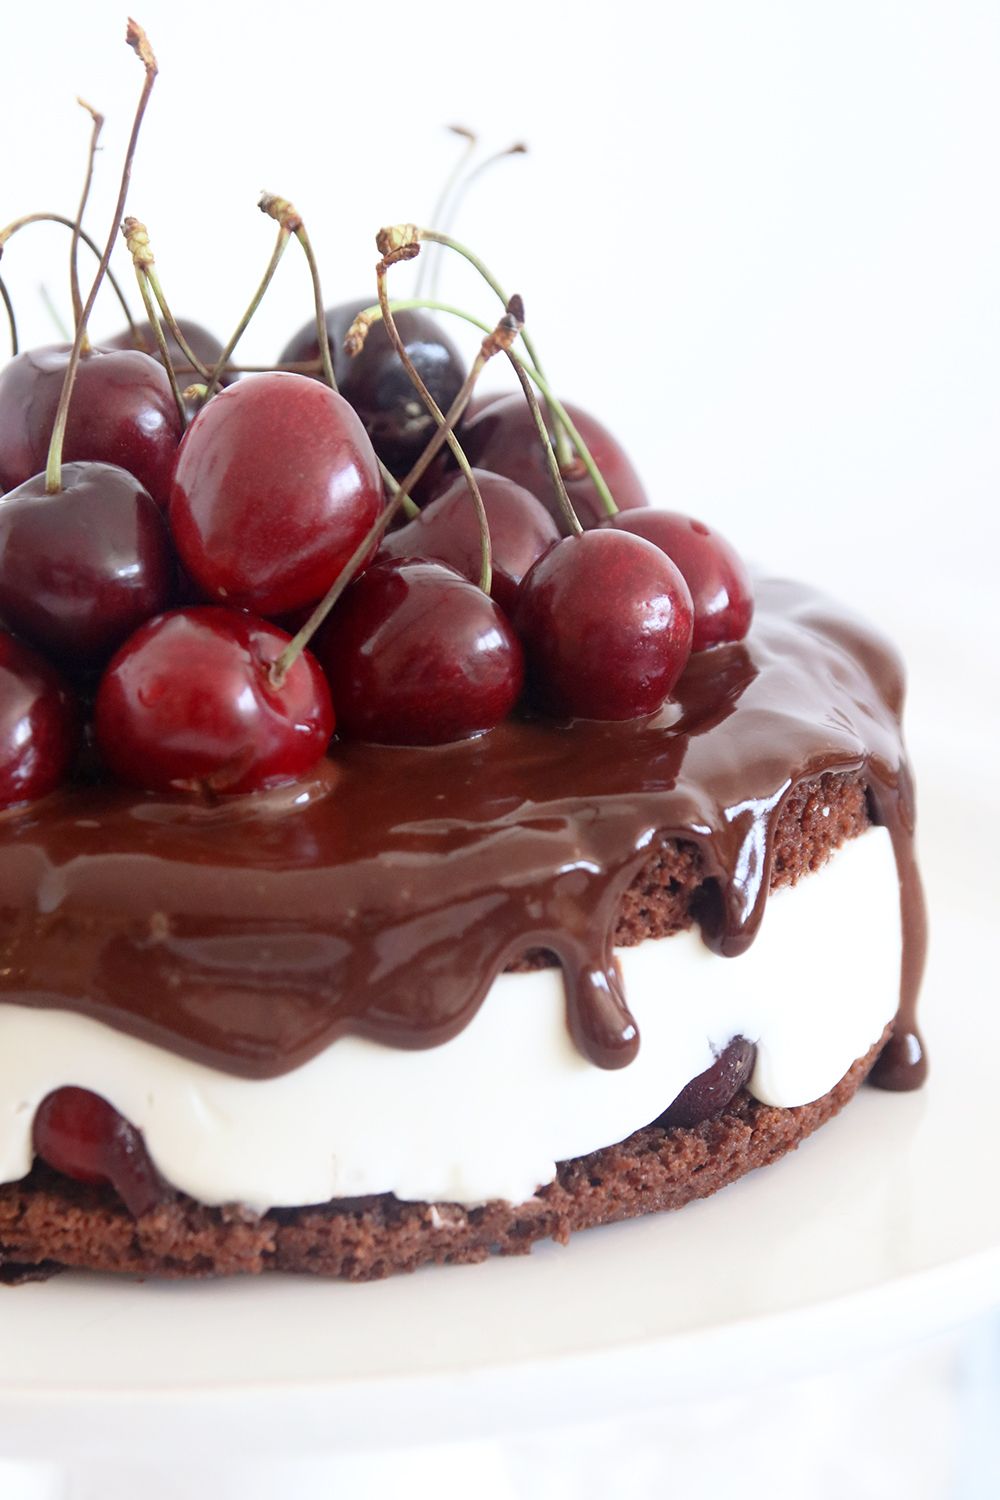 עוגת קוקילידה שוקולד ודובדבנים טבעונית | צילום: נטלי לוין